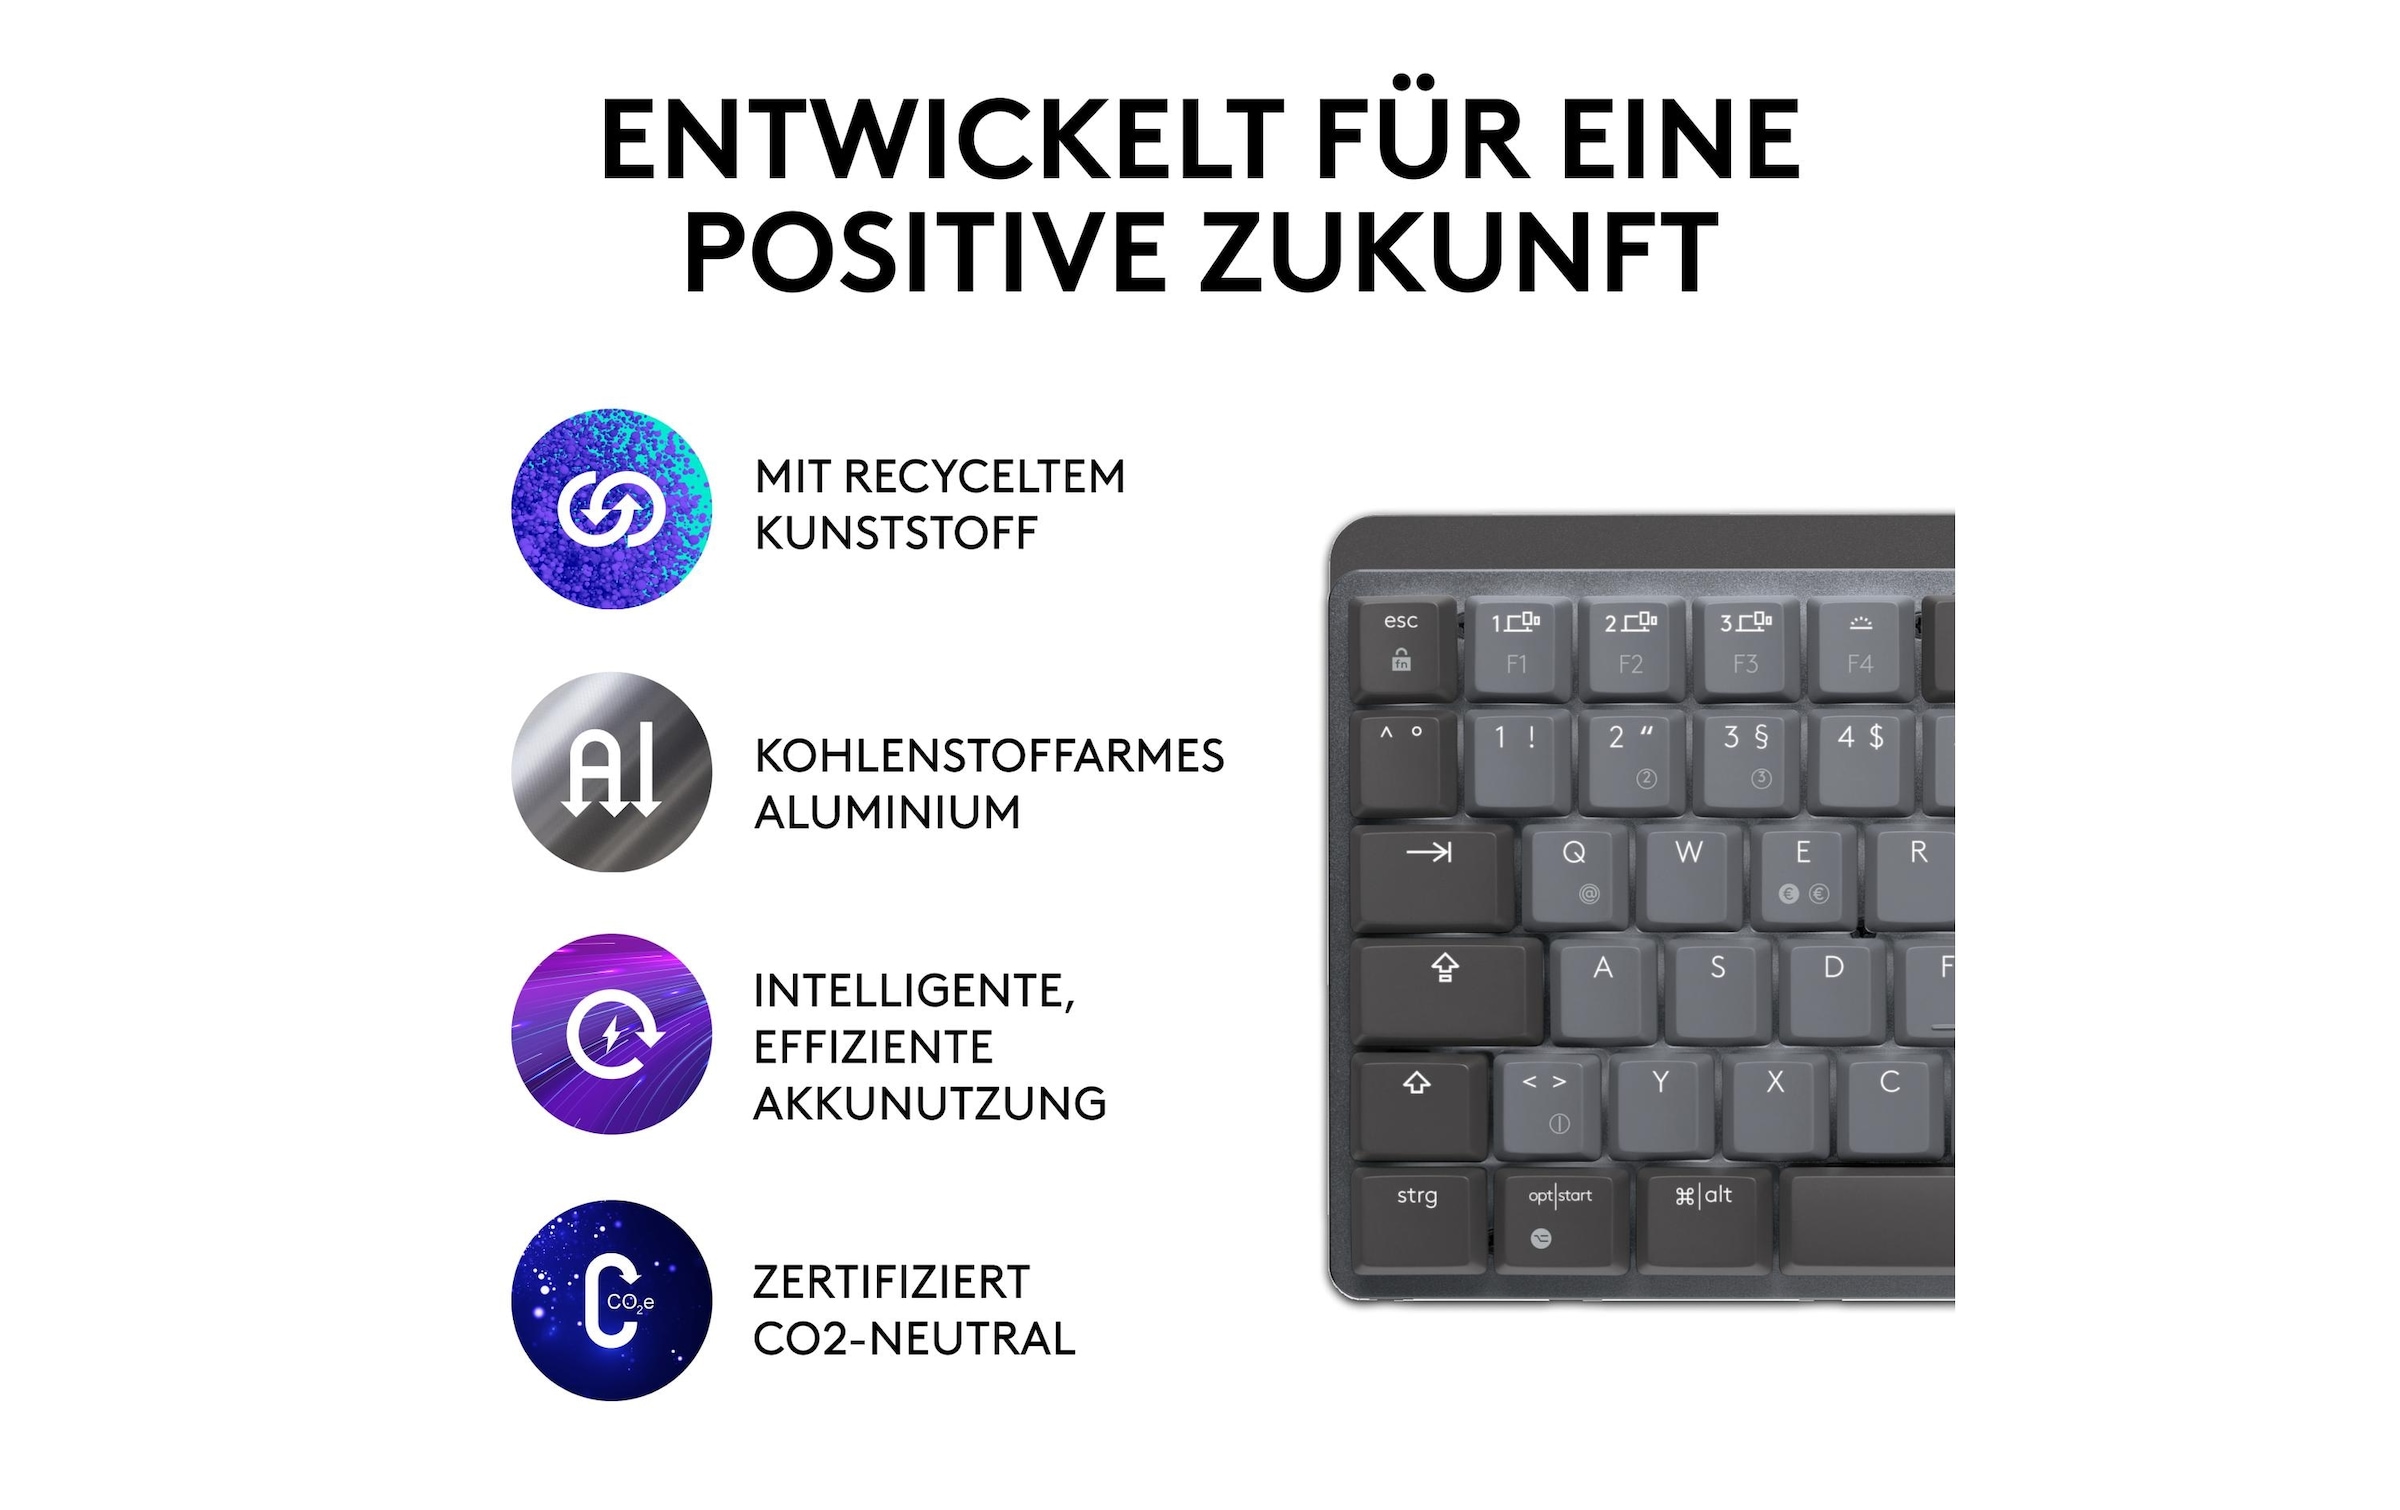 Logitech Wireless-Tastatur »MX Mechanical Mini«